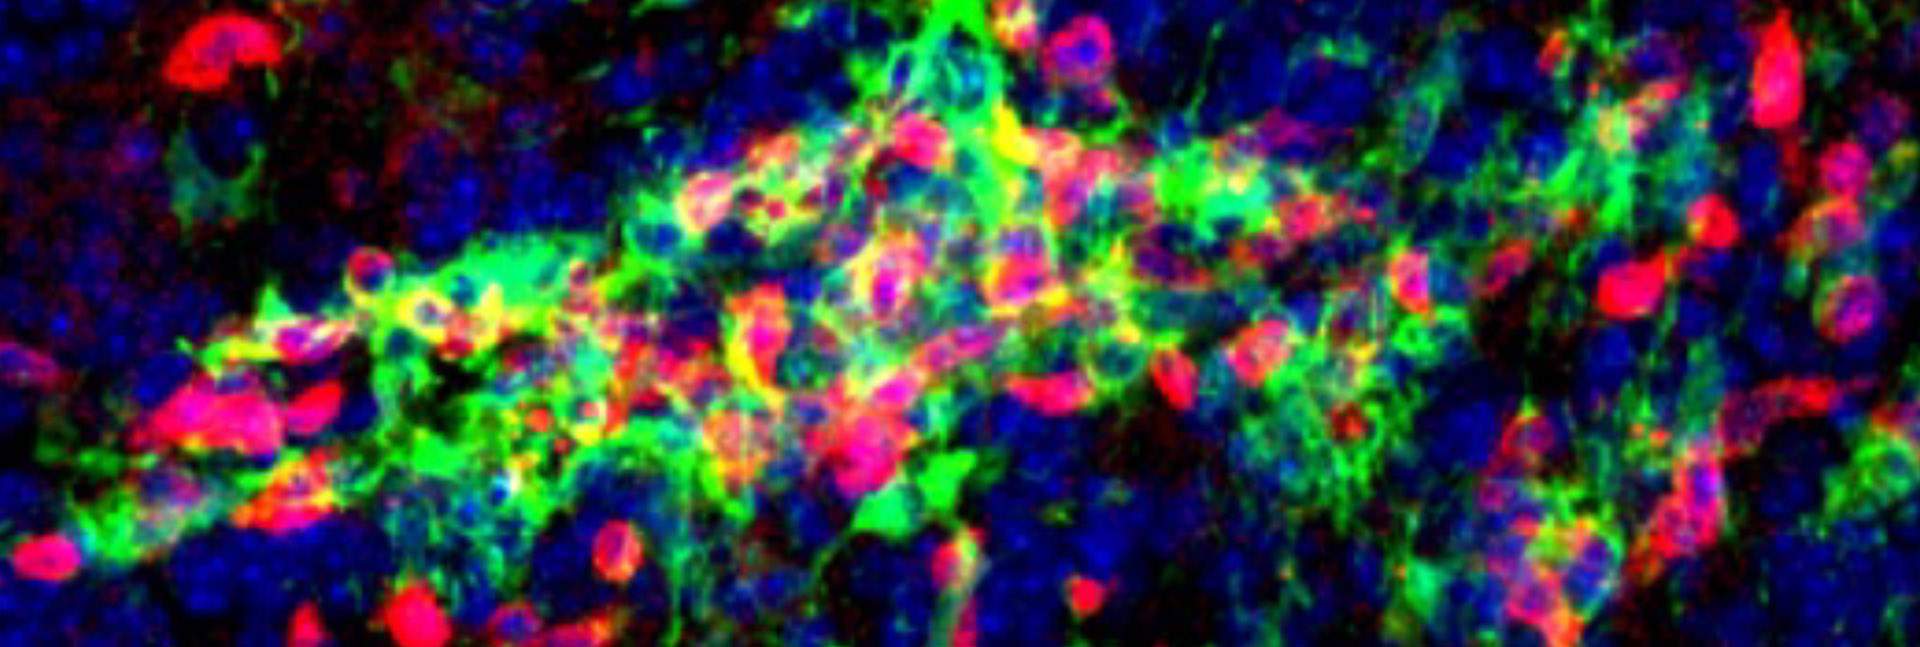 מקבצים של תאי מיקרוגליה (בירוק) ותאי T (באדום) במוח עכבר עם מחלה דמוית טרשת נפוצה